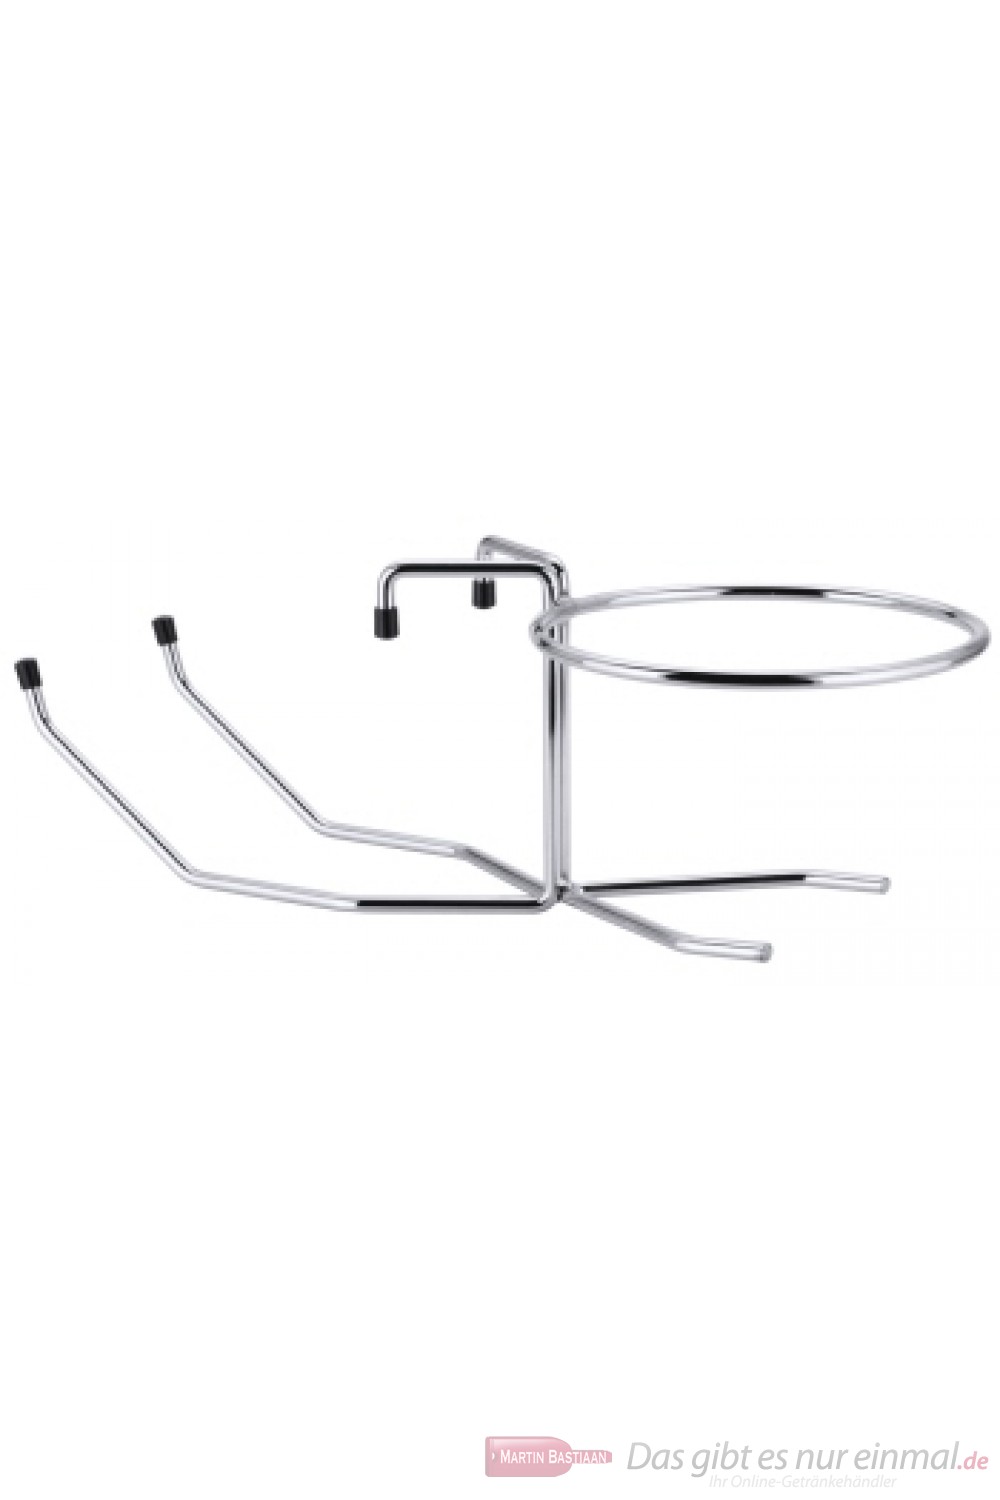 Contacto Tischhalterung für Sektkühler verchromter 8 mm Stahldraht schwere Qualität Durchmesser 18,4cm